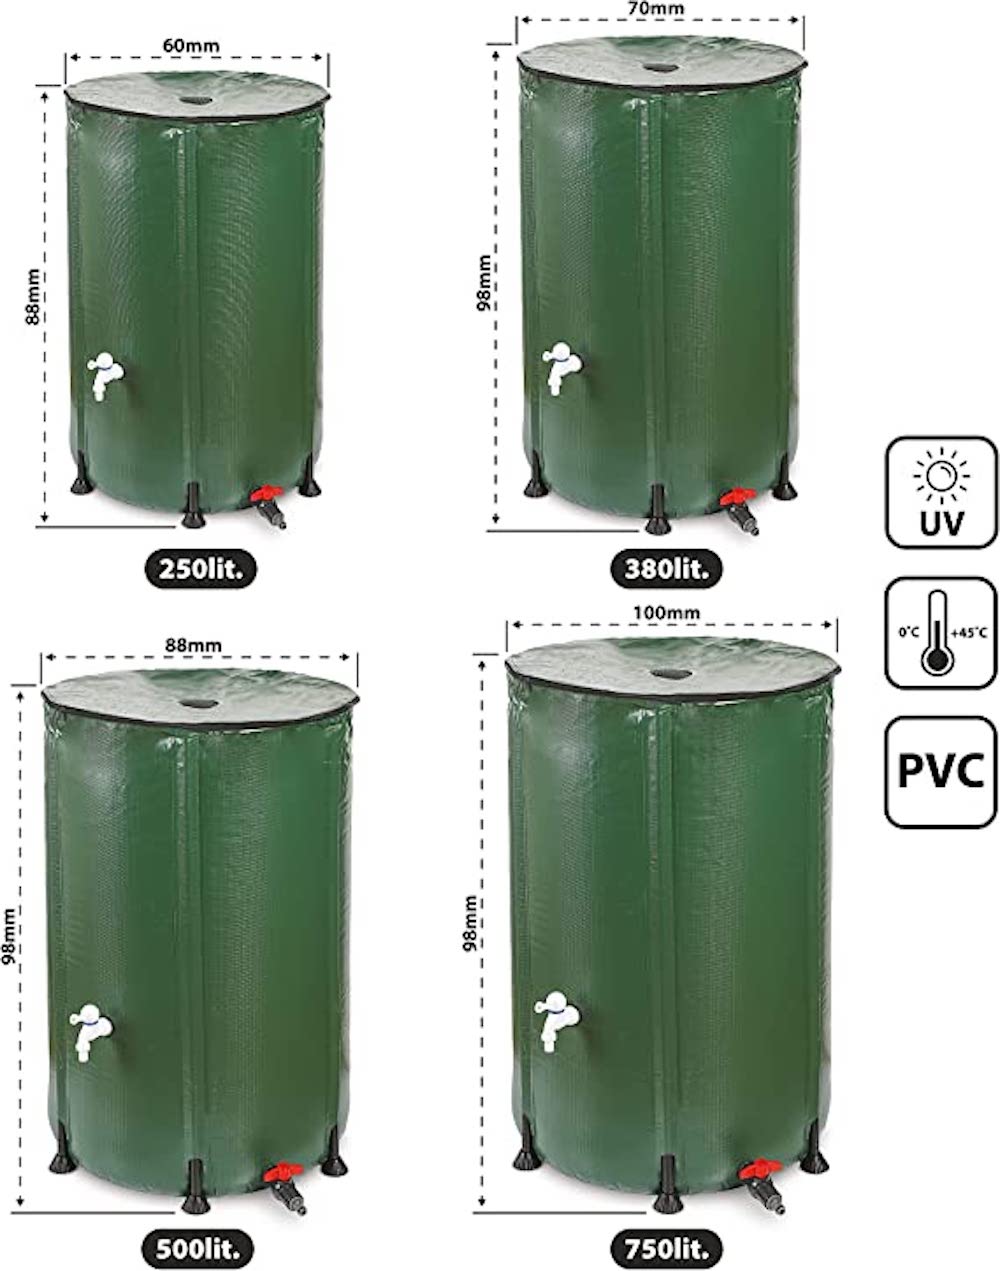 RENATA Faltbare grüne Regentonne aus UV-stabilem PVC, 250 Liter Volumen, inkl. Filter & Schlauchschnelladapter, Tonne, Regentonne, Mehrzweckfass, Kunststoffbehälter, Wassertank